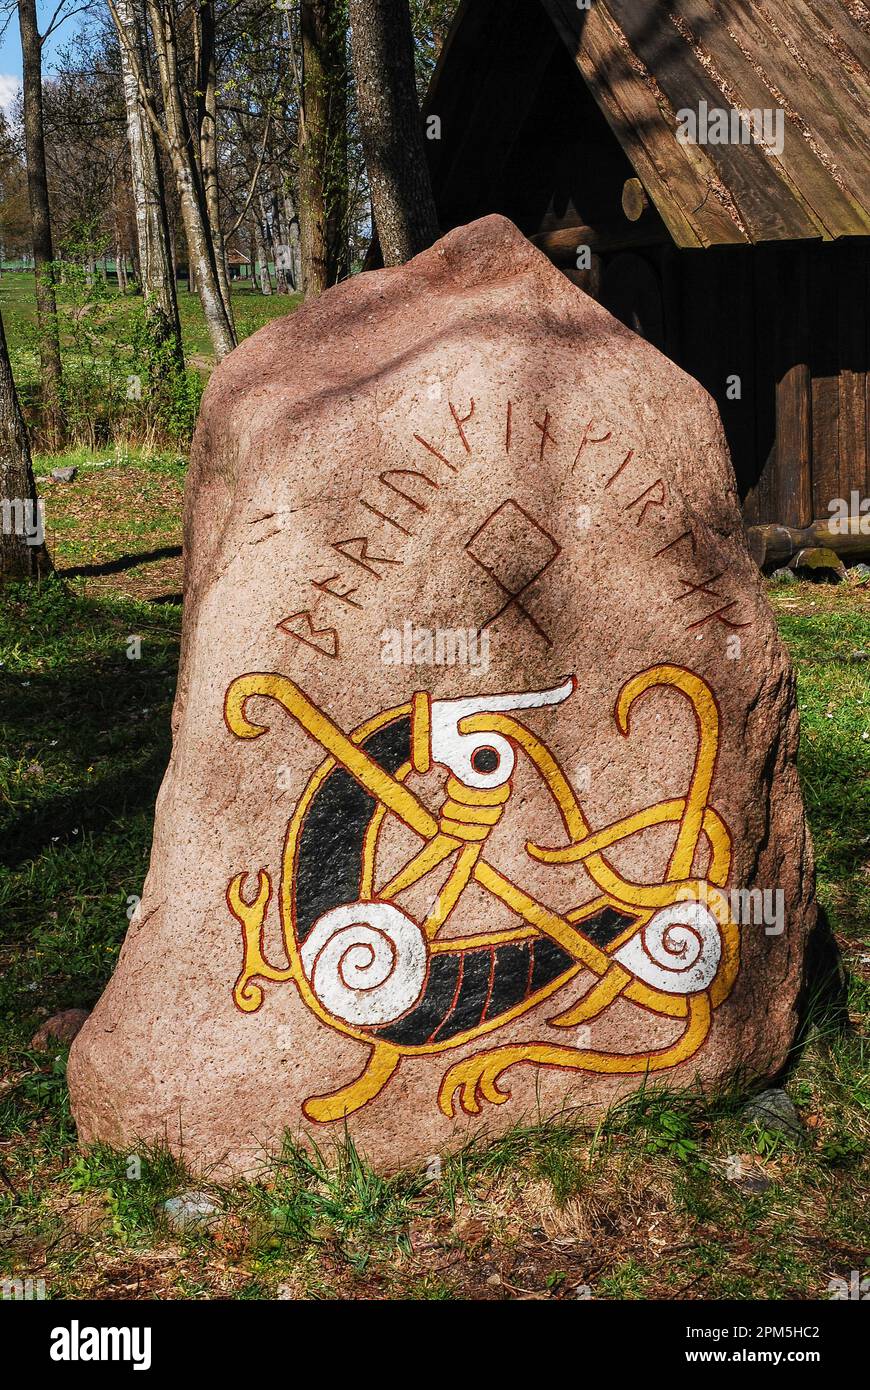 Pietra rune vichinga. Iscrizioni runiche sulla pietra. Borre, Norvegia Foto  stock - Alamy